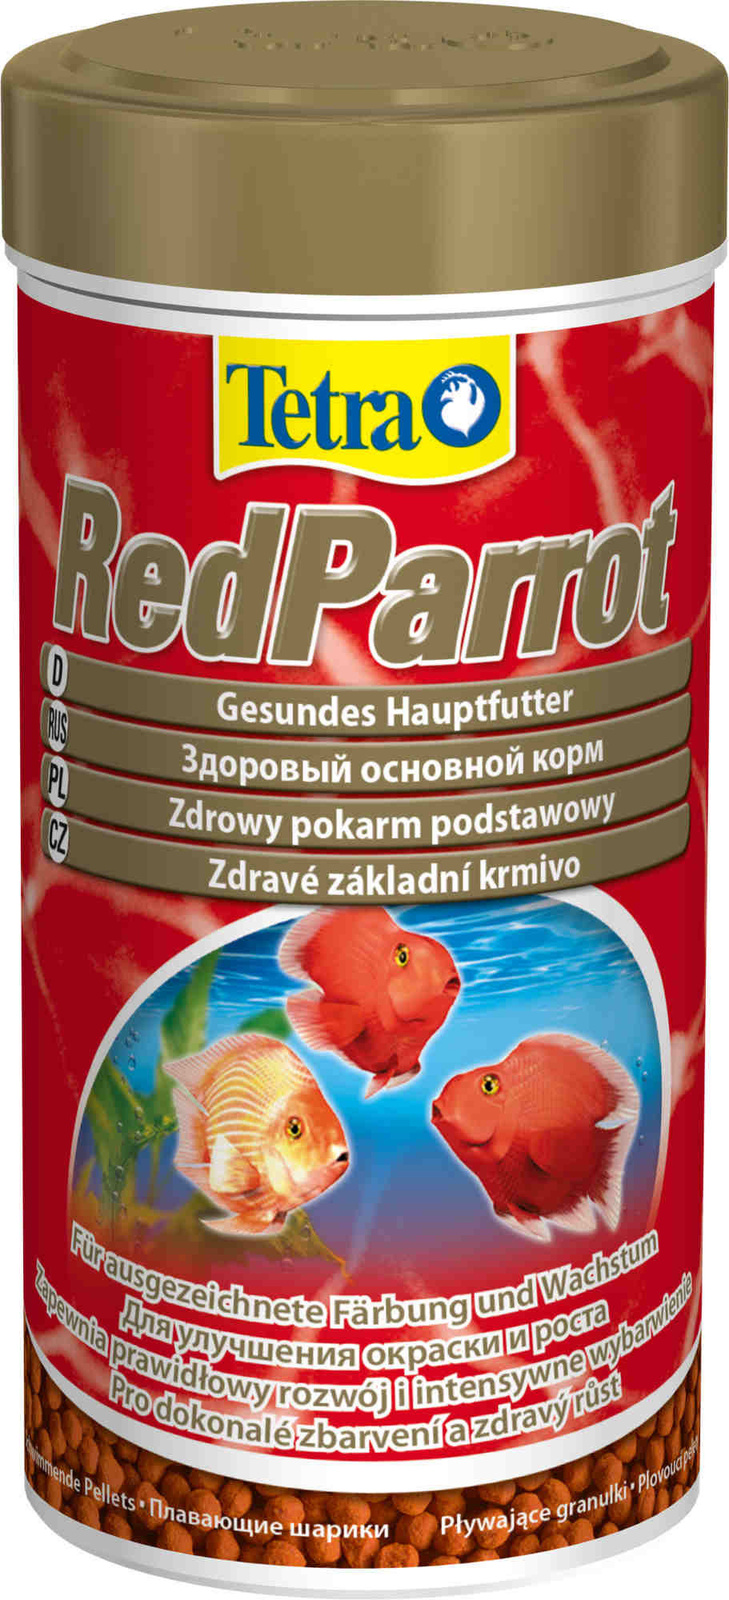 Tetra (корма) Tetra (корма) корм для красных попугаев, шарики (110 г) sera корм для красных попугаев red parrot 1000 мл 330 г